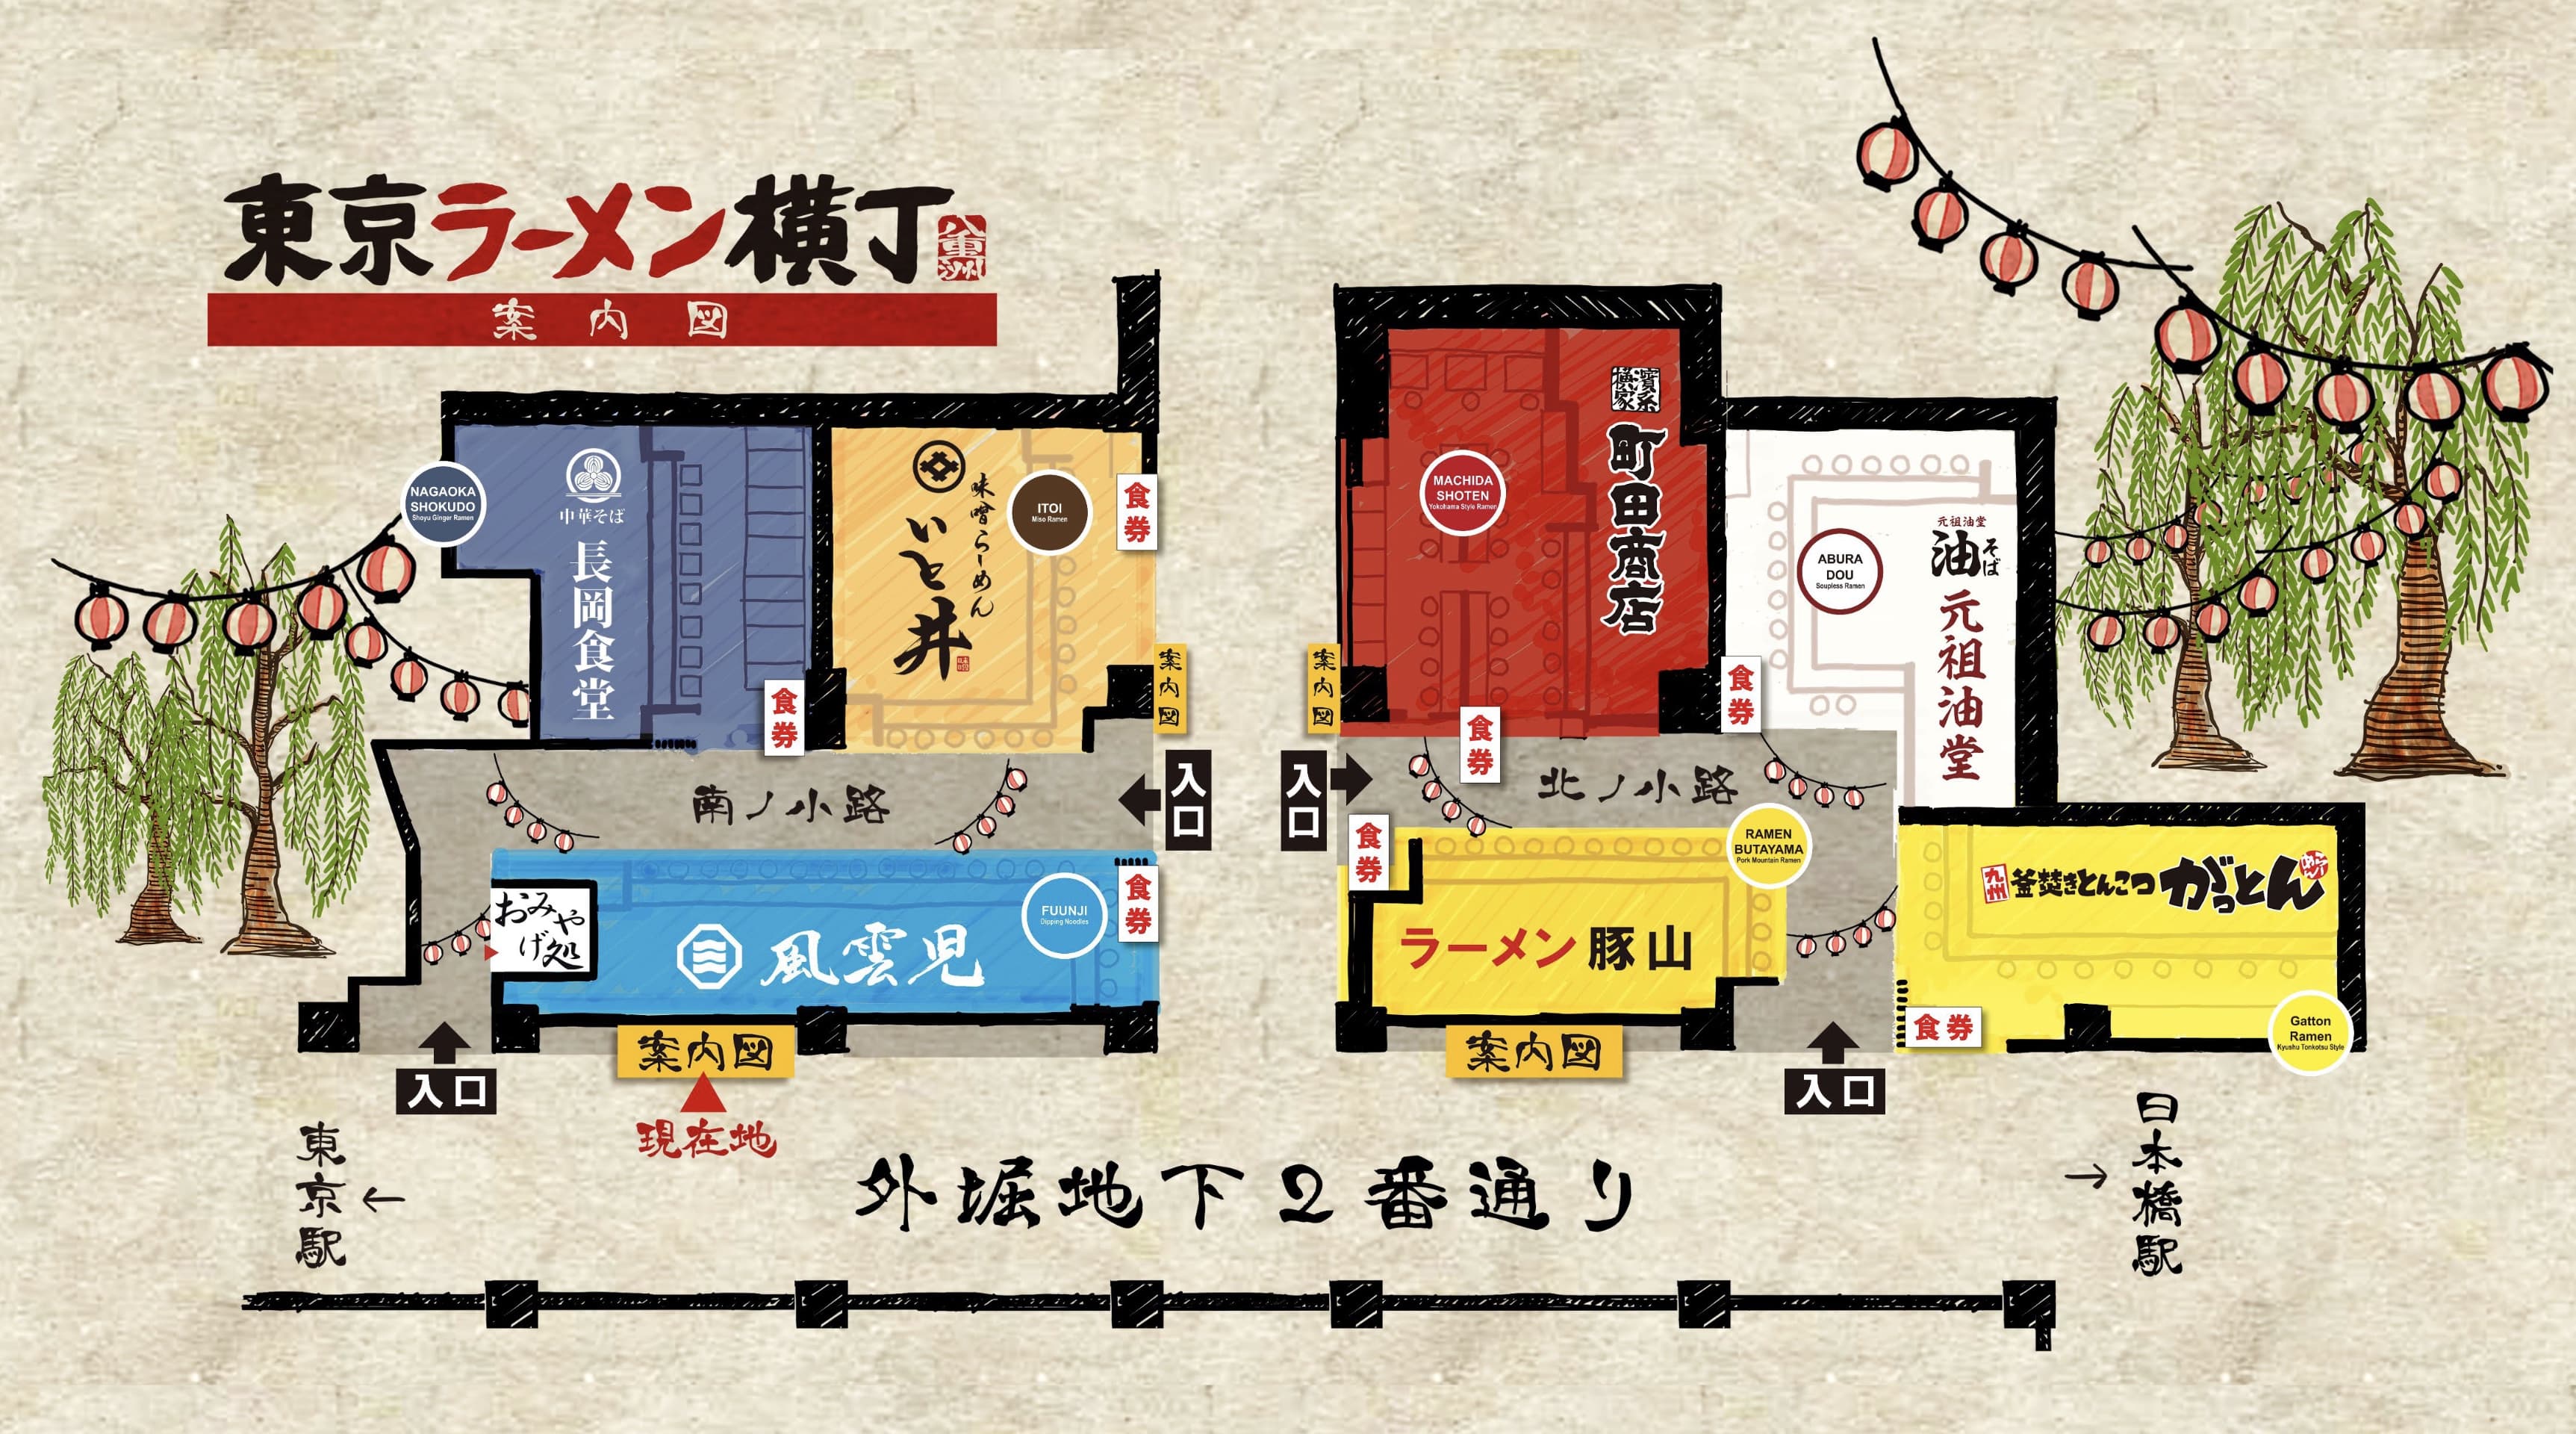 東京ラーメン横丁の館内地図